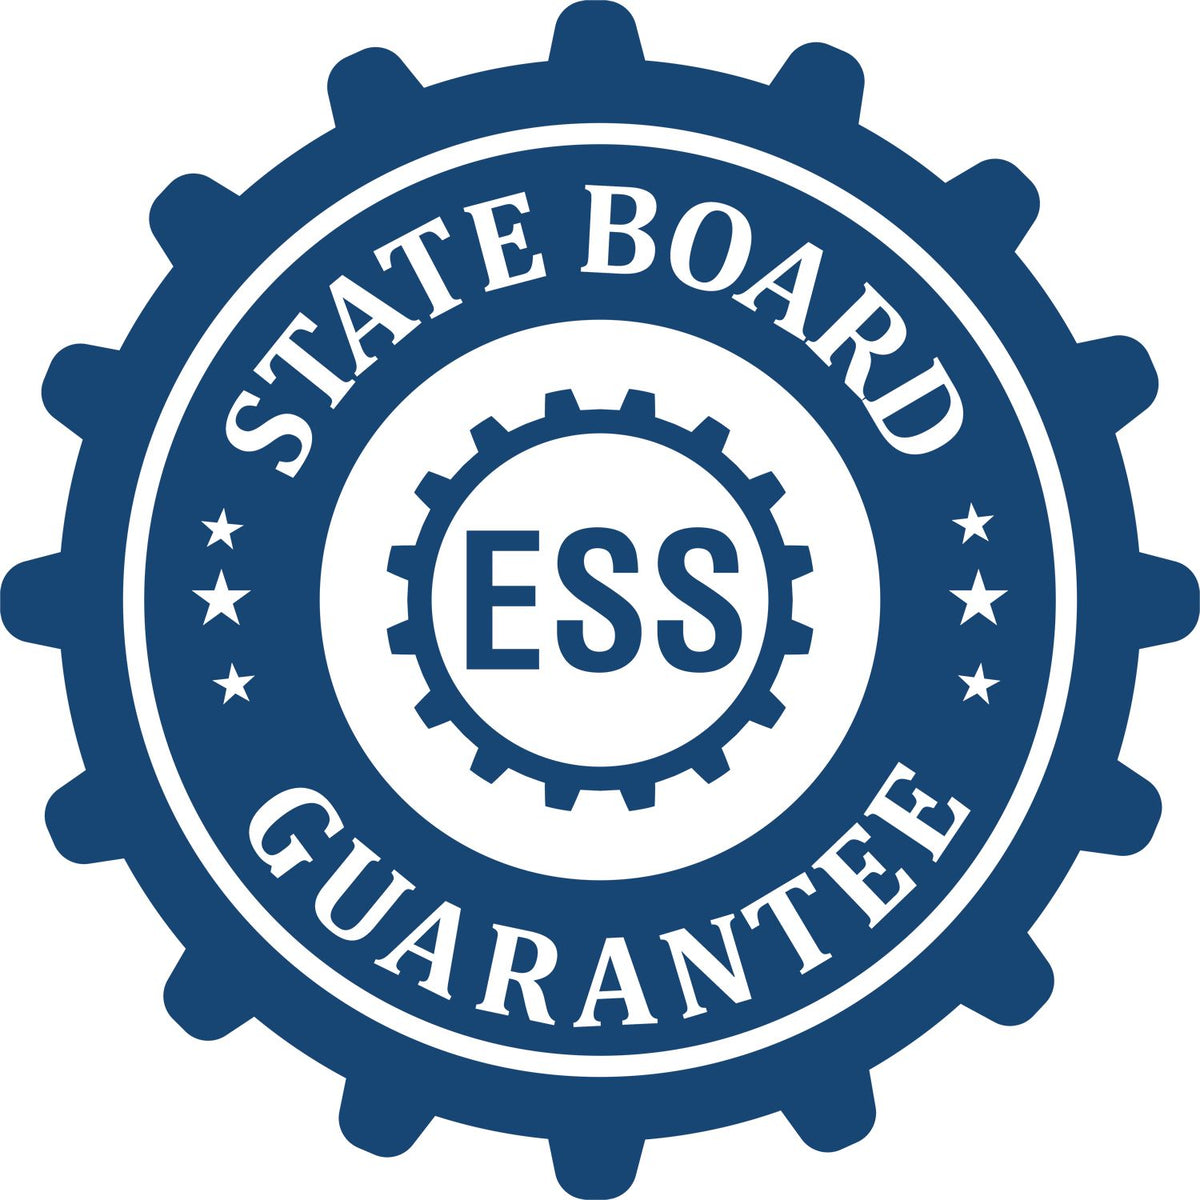 Land Surveyor Handheld Seal Embosser 3001LS State Board Guarantee